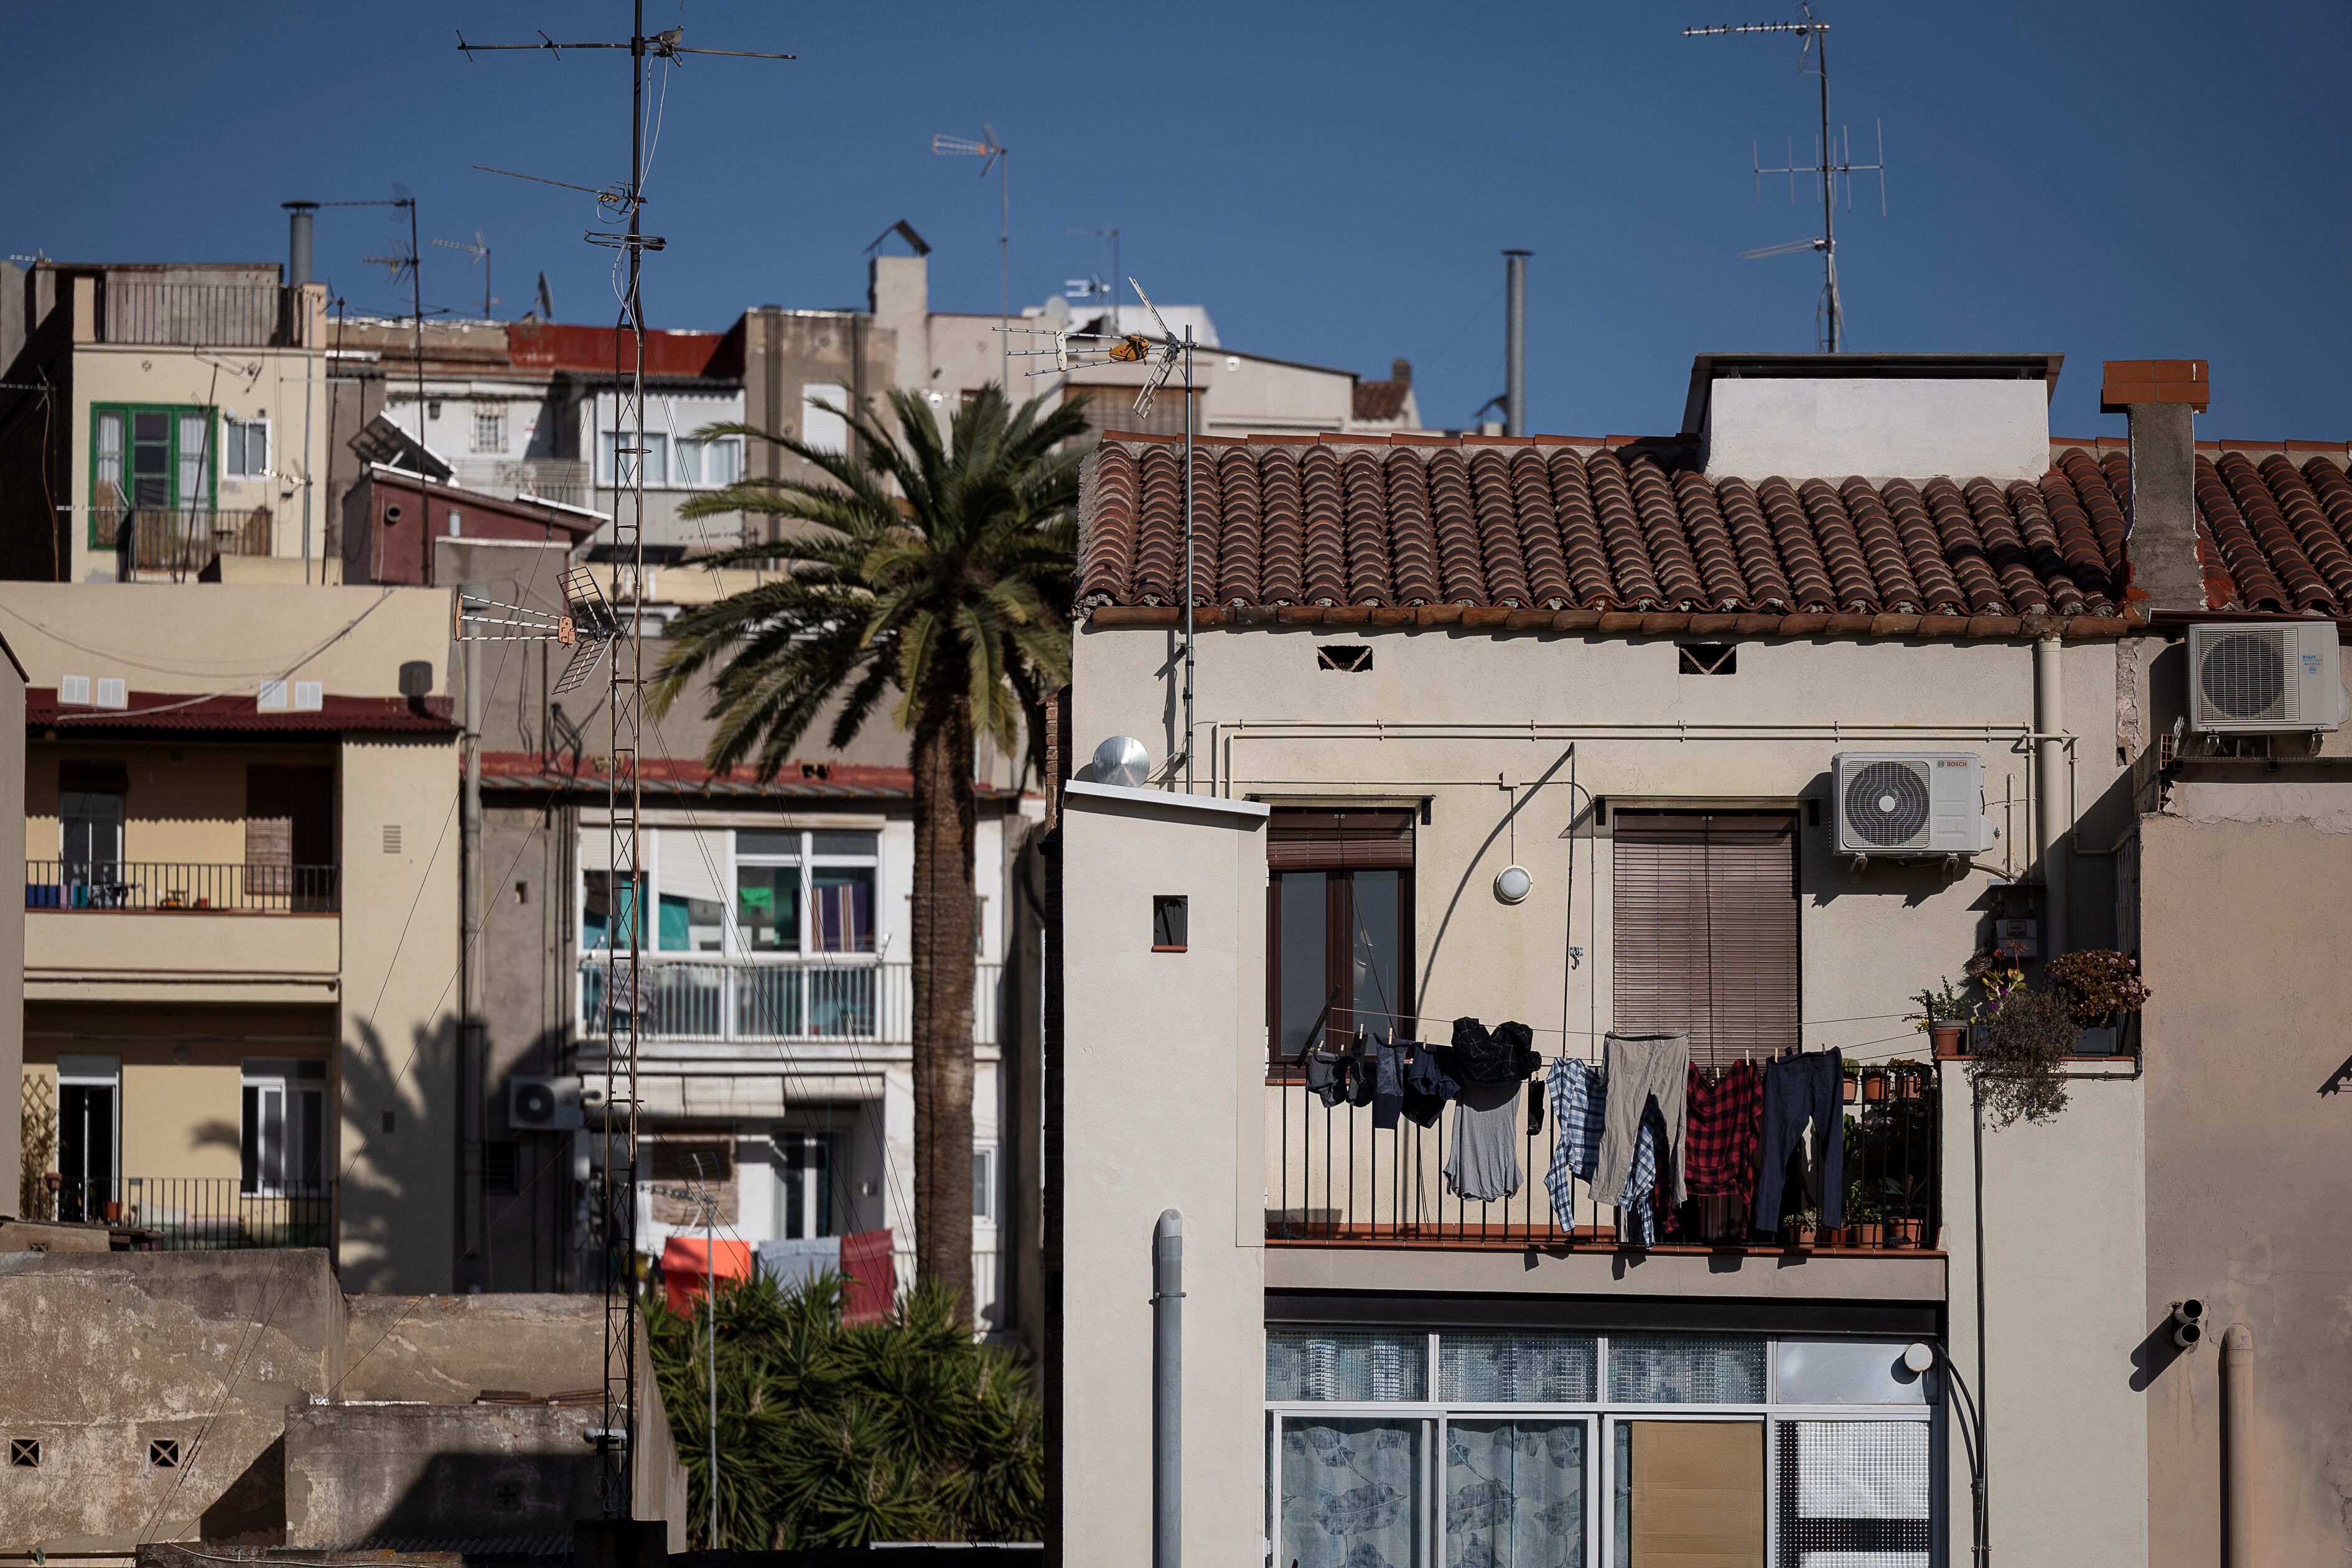 Pisos de distintas épocas en el barrio de La Bordeta de Barcelona.